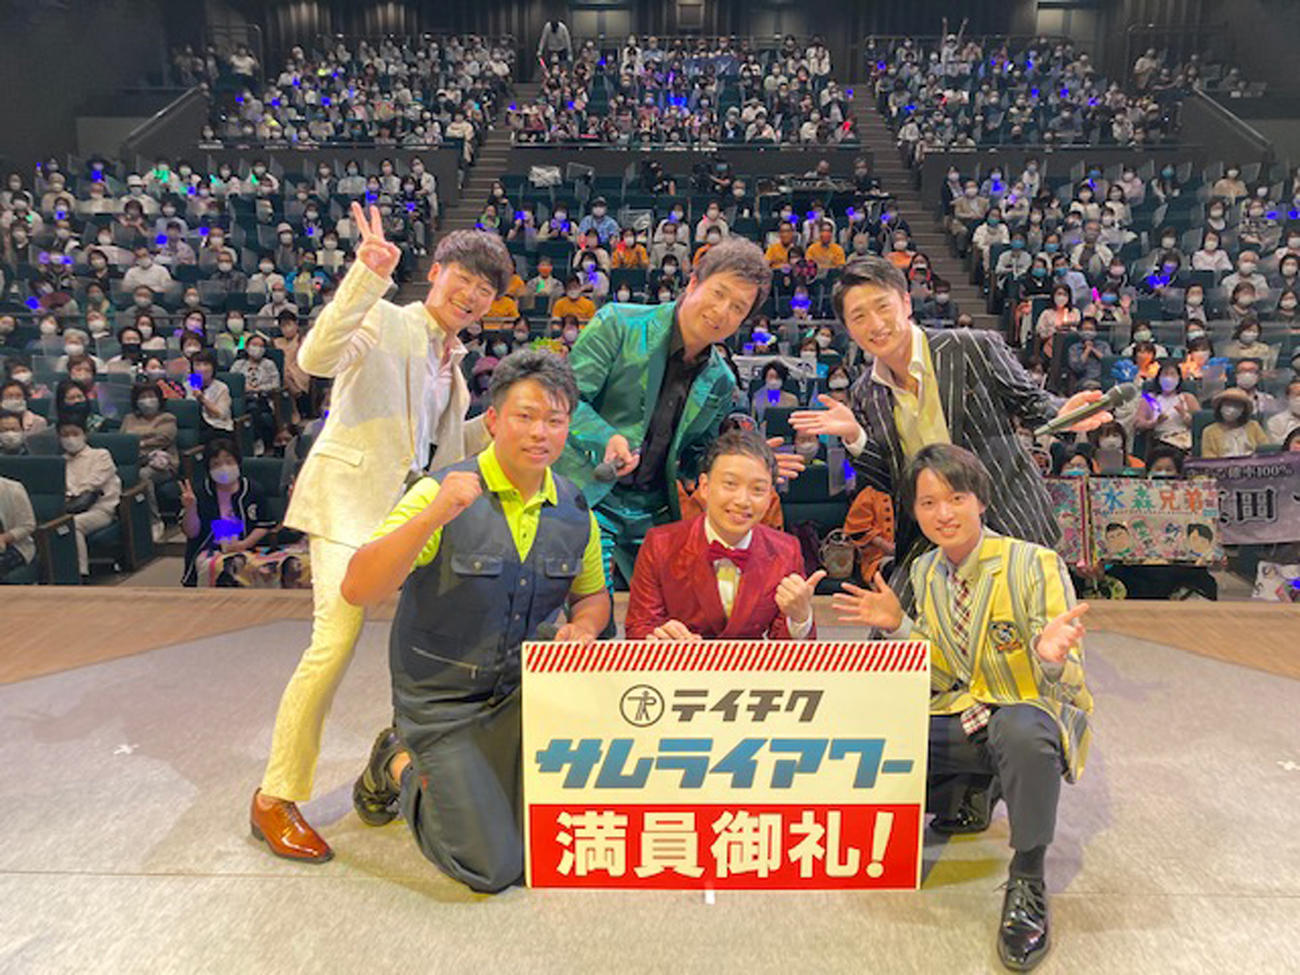 コンサートを開催した、前列左から木川尚紀、三丘翔太、青山新。後列左から伊達悠太、松原健之、真田ナオキ